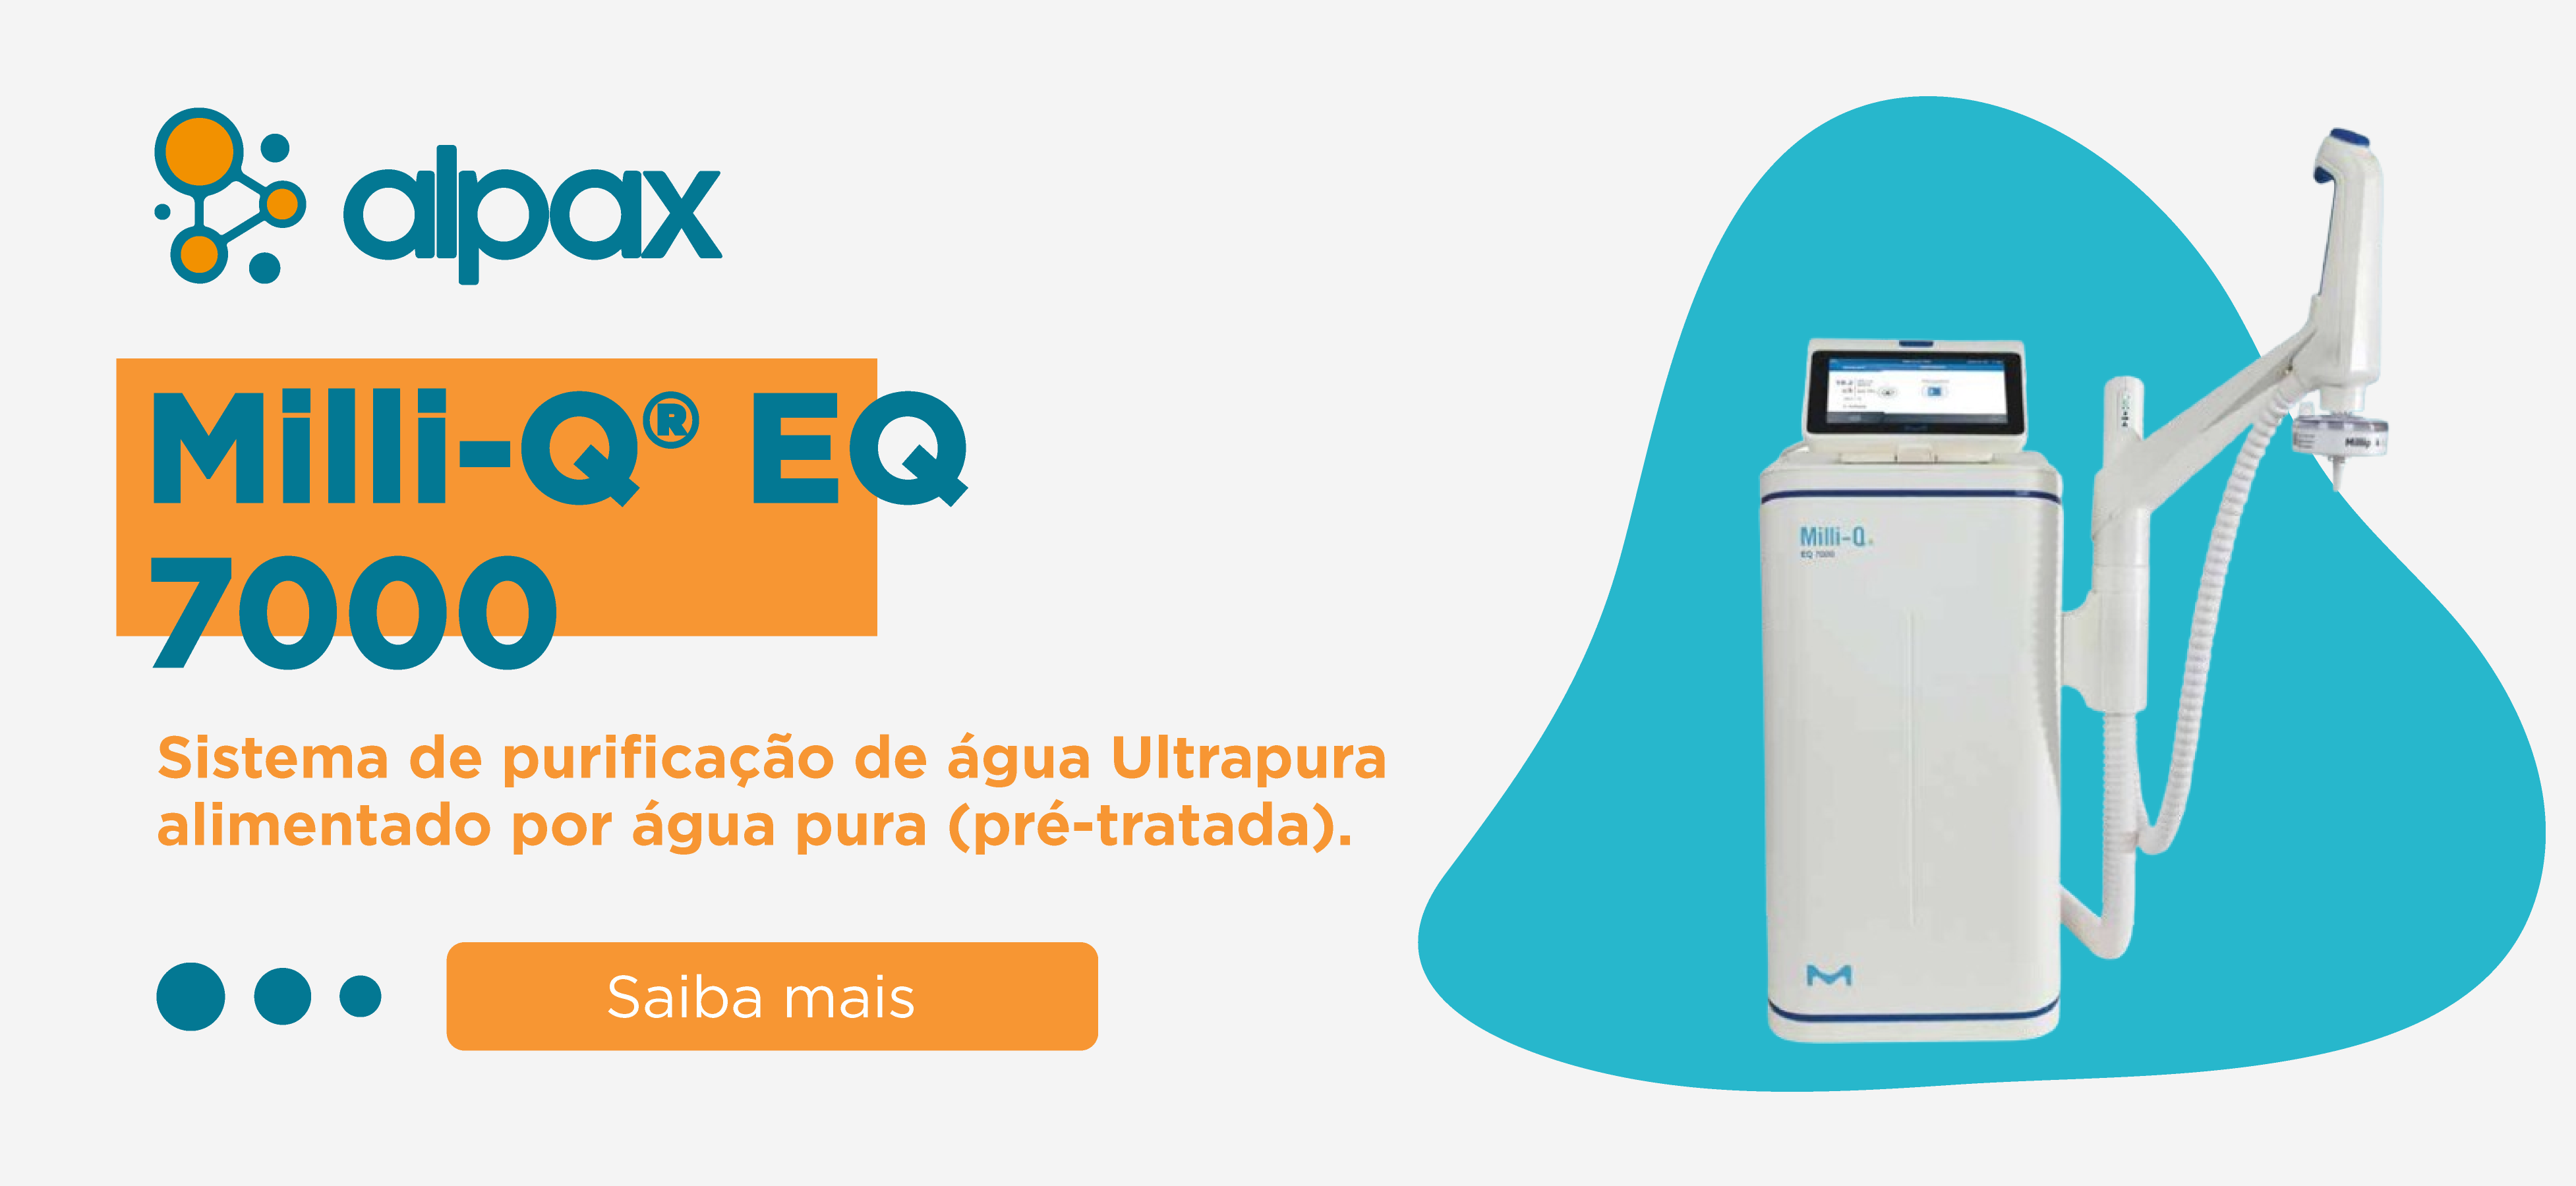 Milli-Q® EQ 7000 Sistema de purificação de água Ultrapura